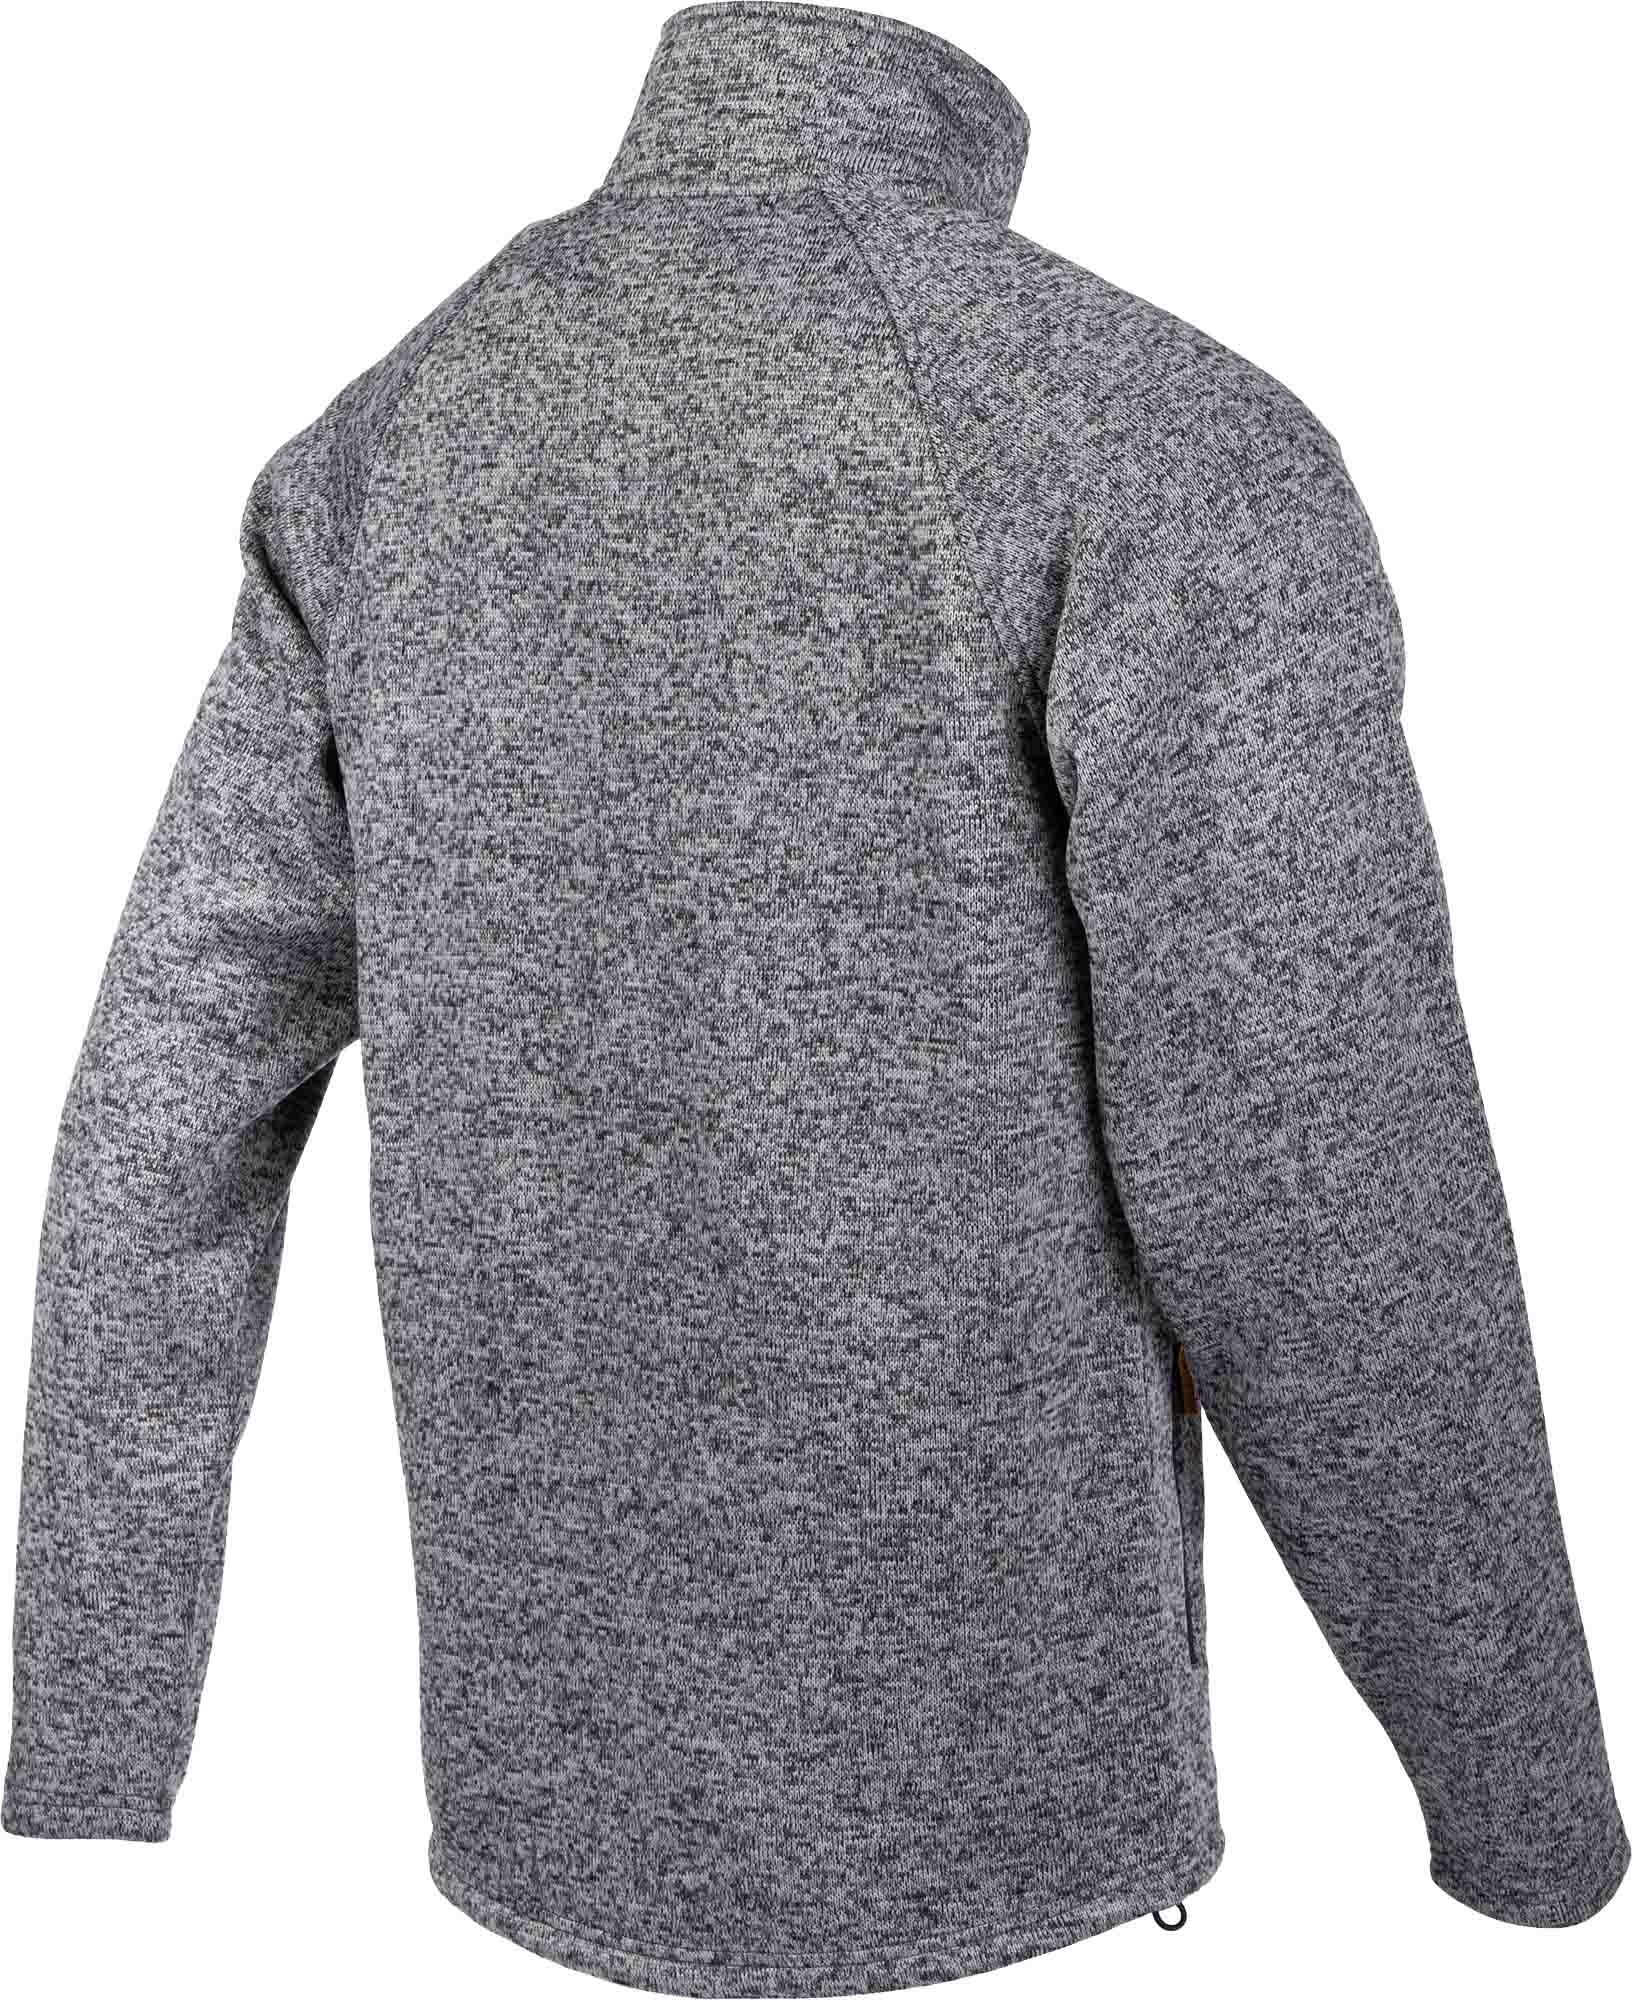 Men's sweatshirt